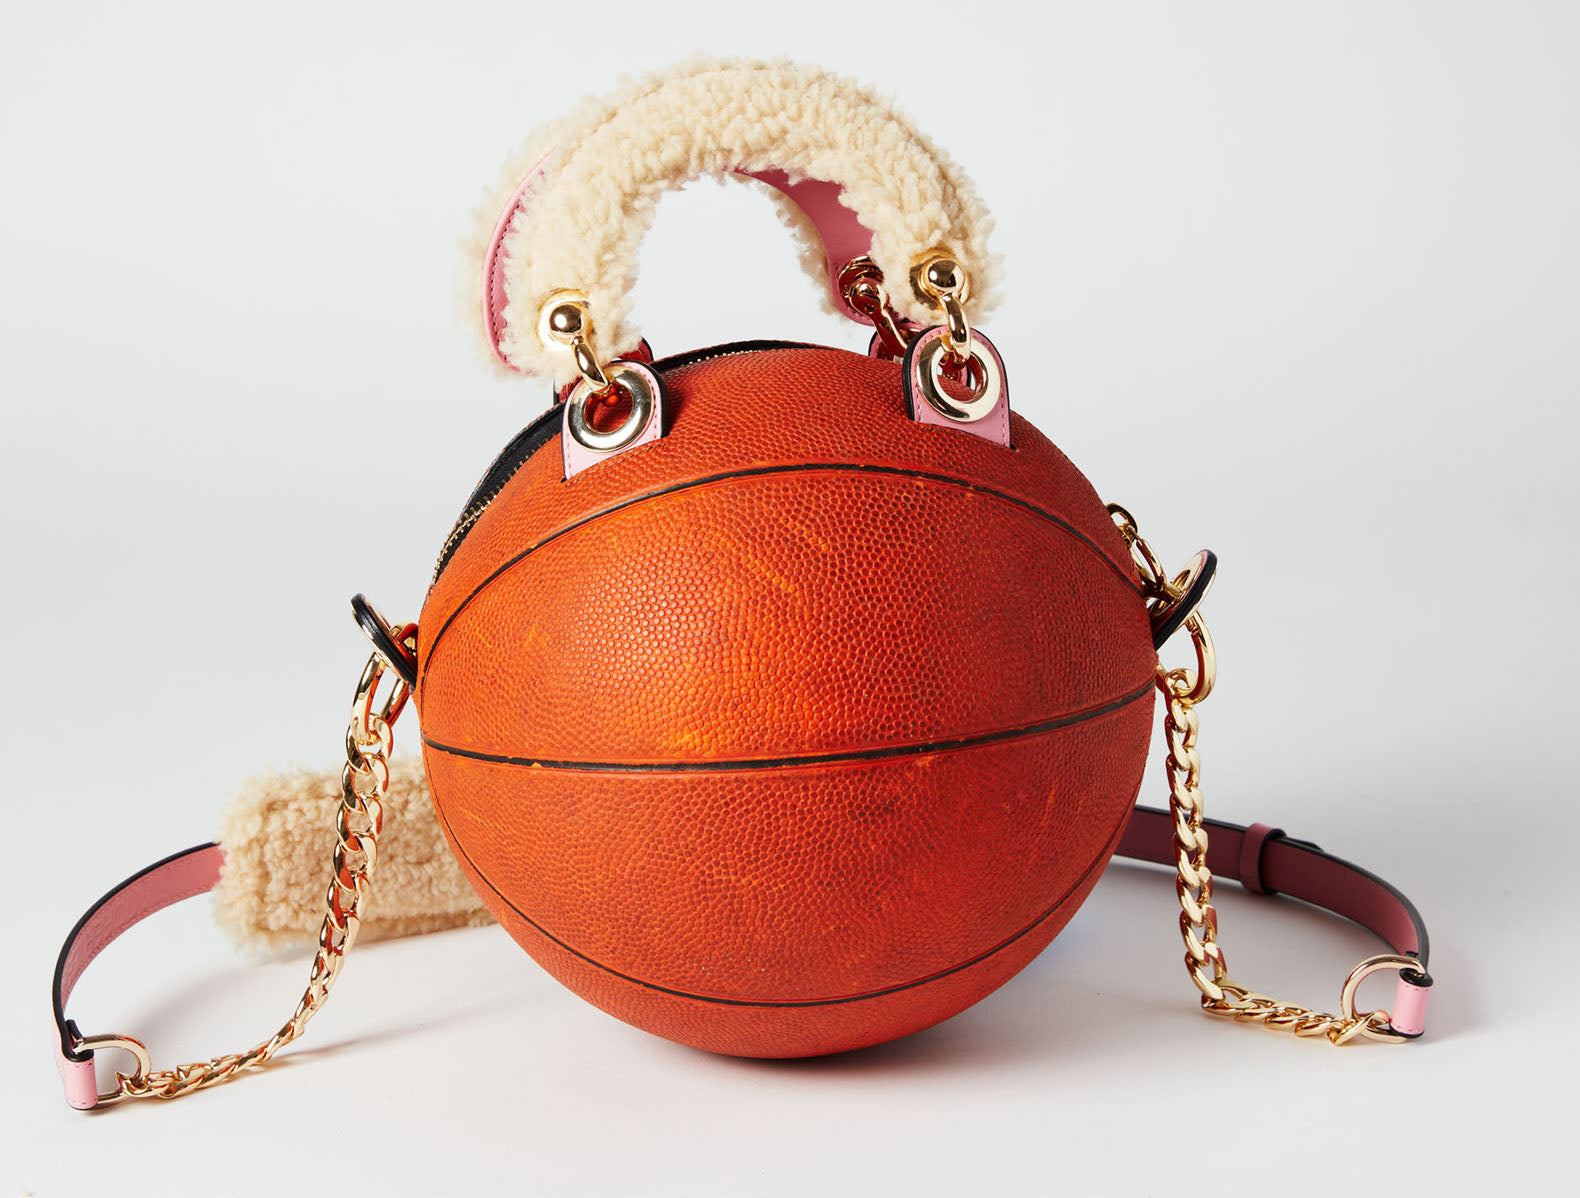 1970's DR J Spalding Basketball Bag